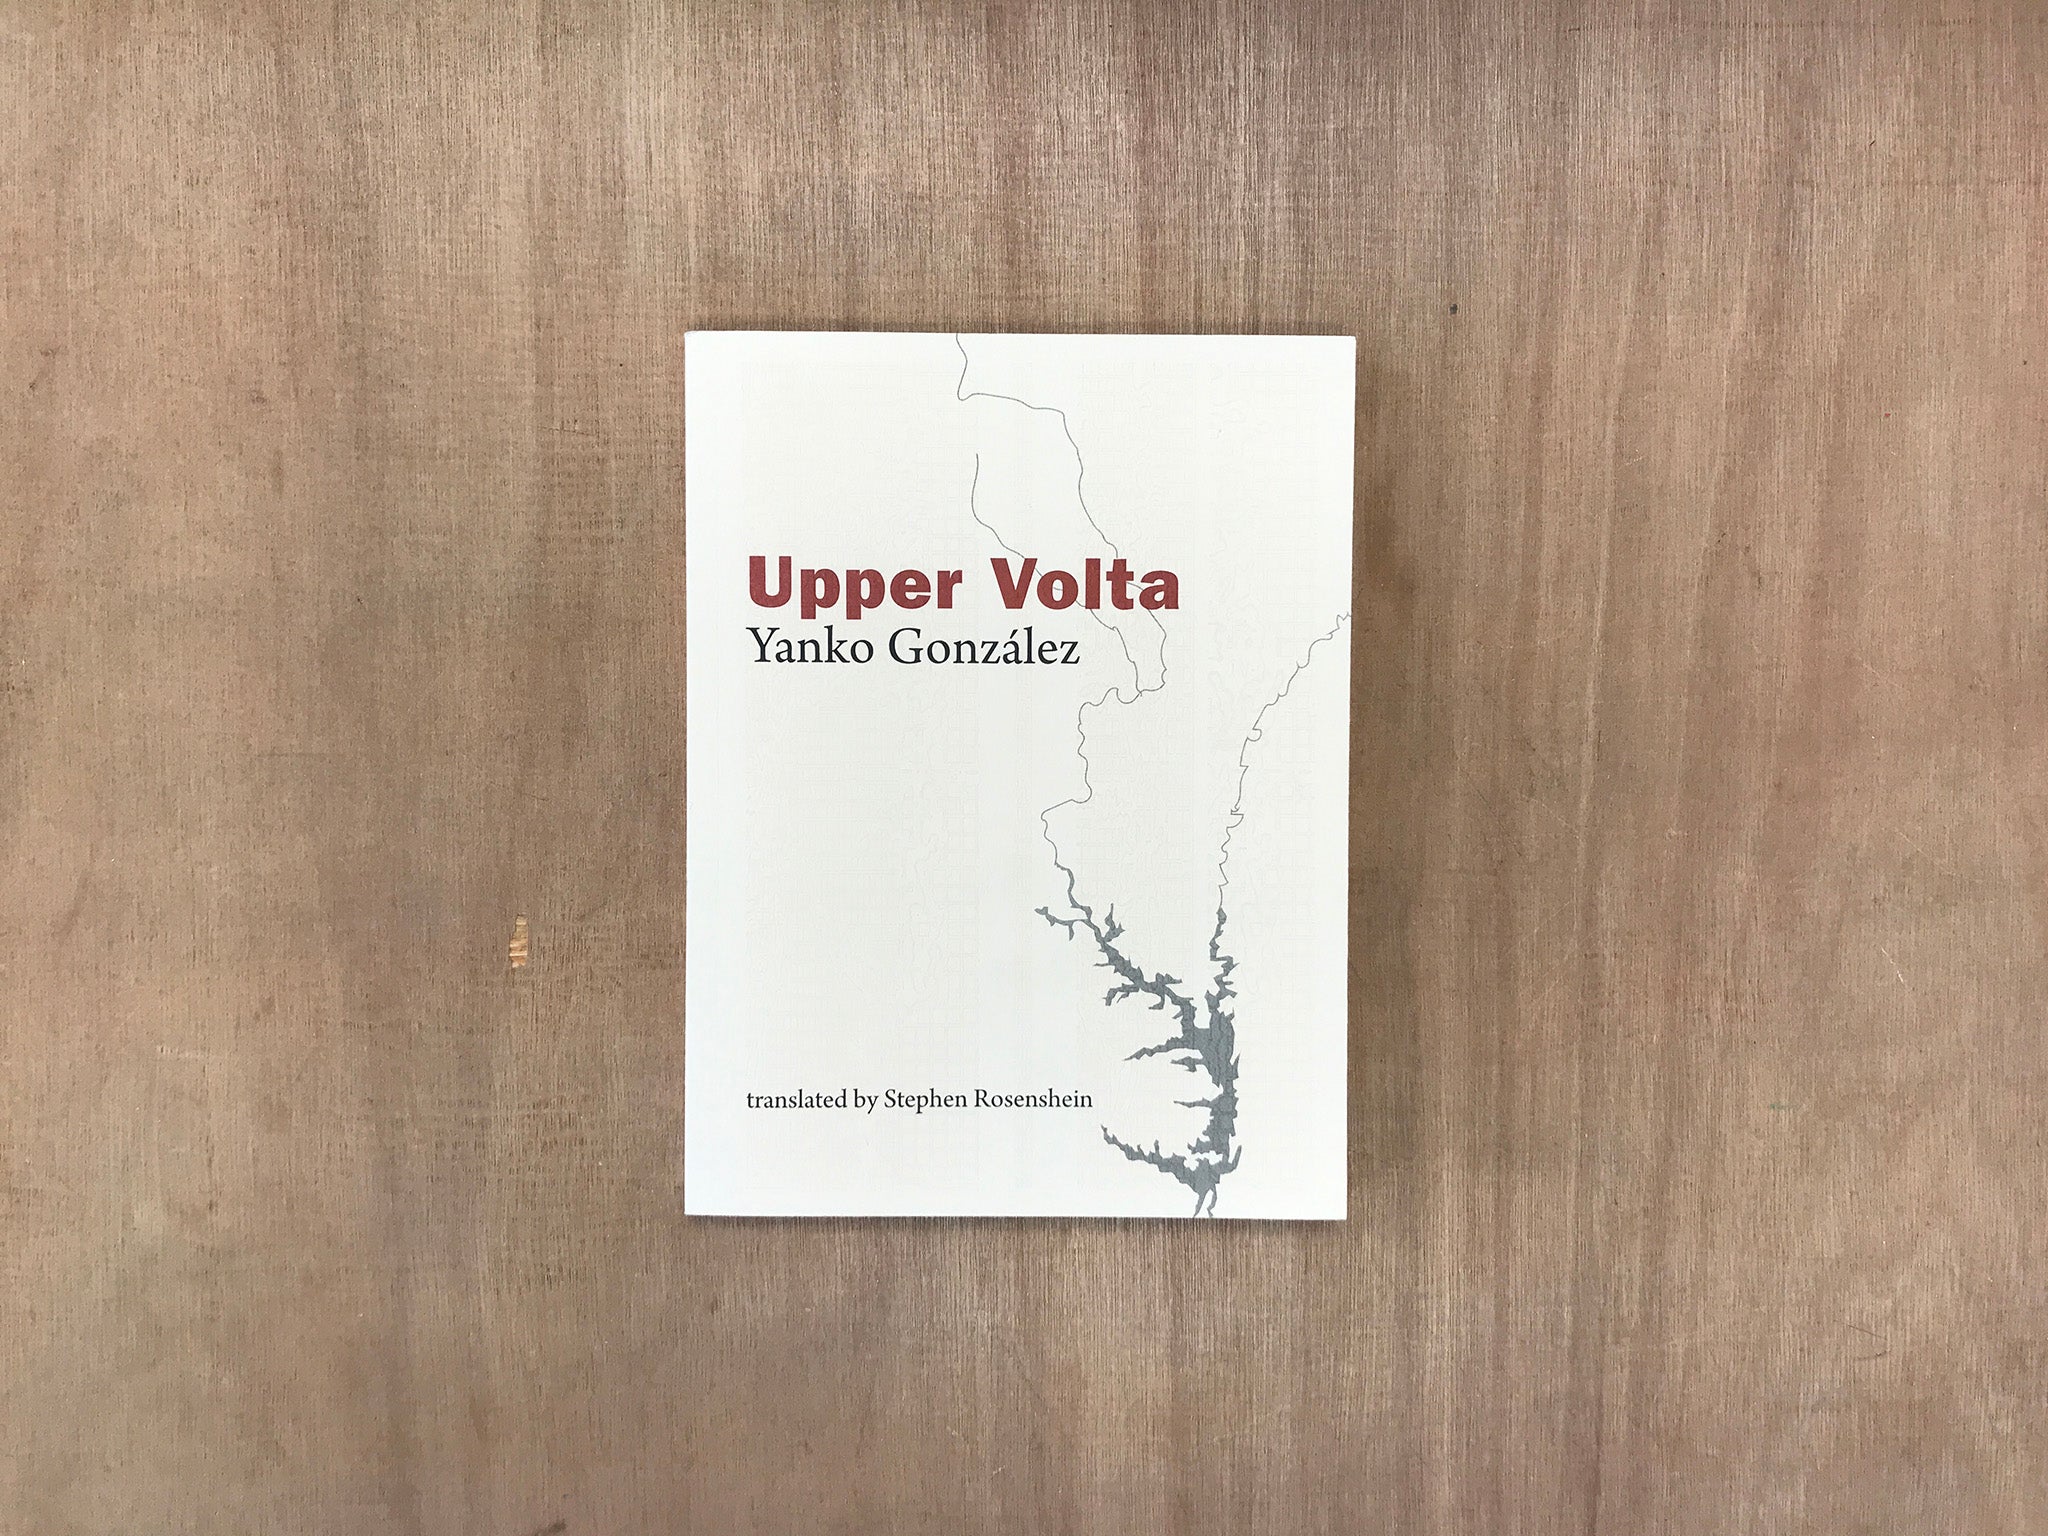 UPPER VOLTA by Yanko González